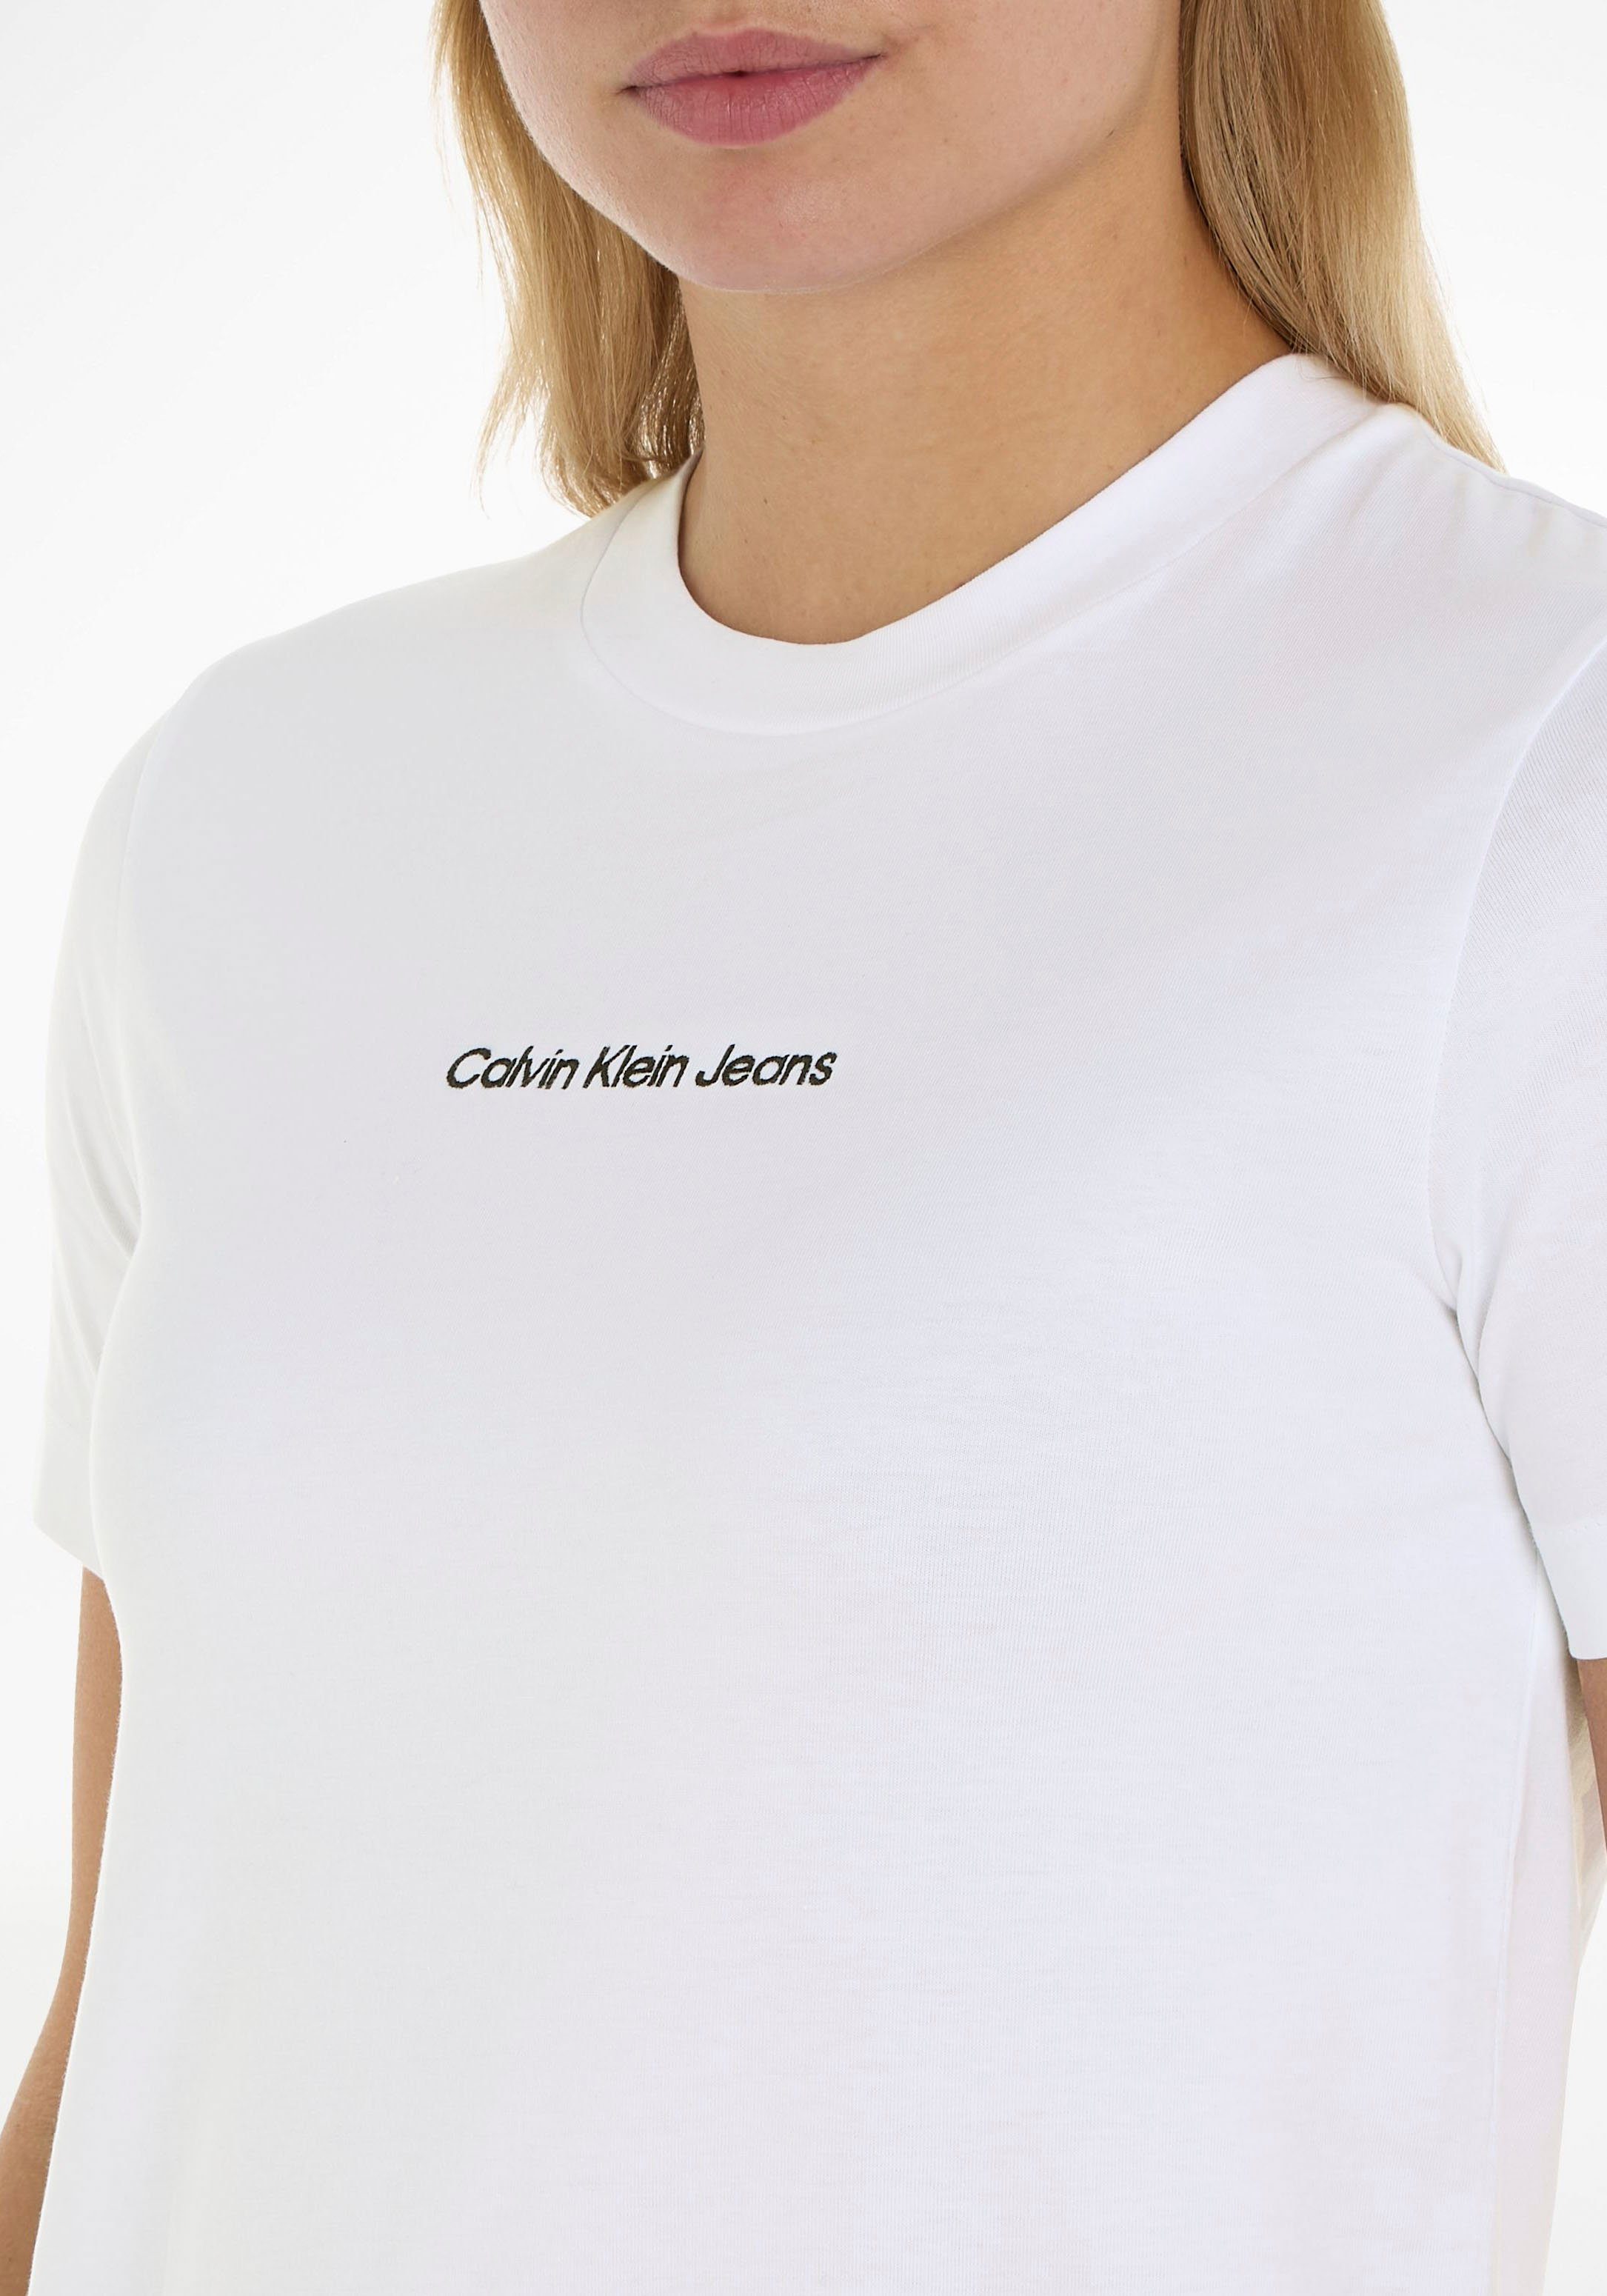 T-Shirt Klein Jeans Baumwolle reiner Calvin aus weiß